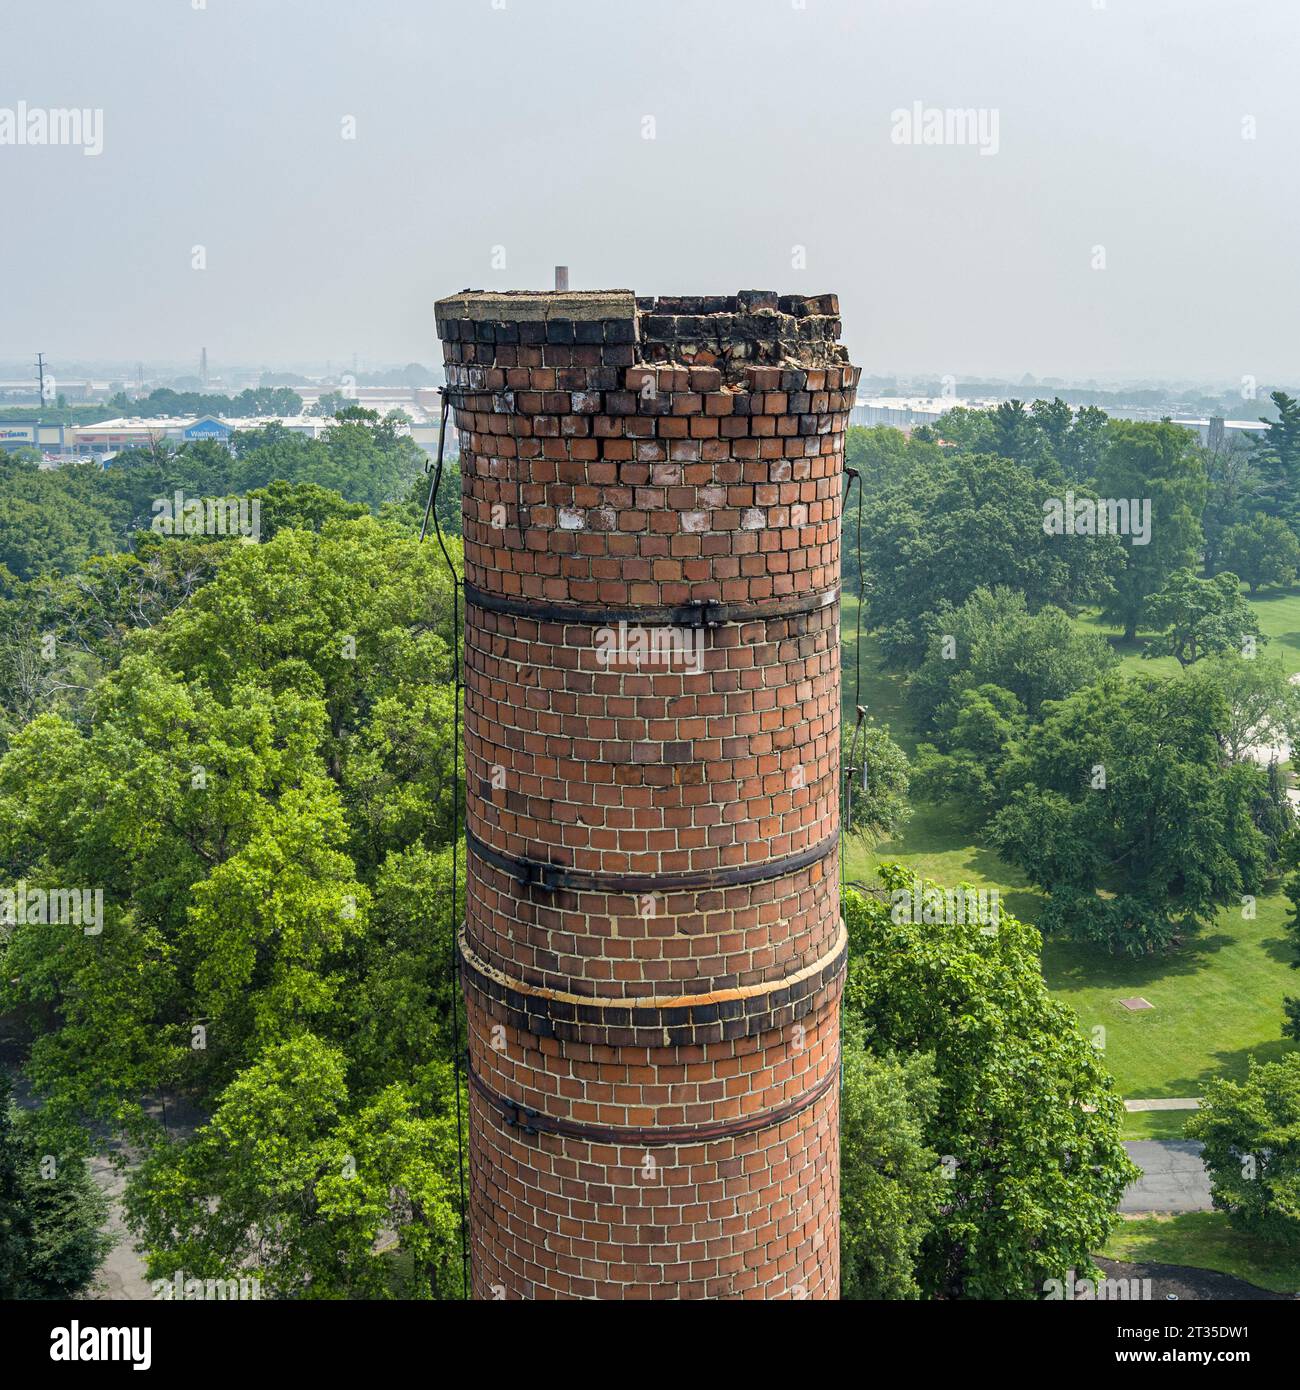 Vue aérienne d'une cheminée en brique endommagée frappée par la foudre, Philadelphie USA Banque D'Images